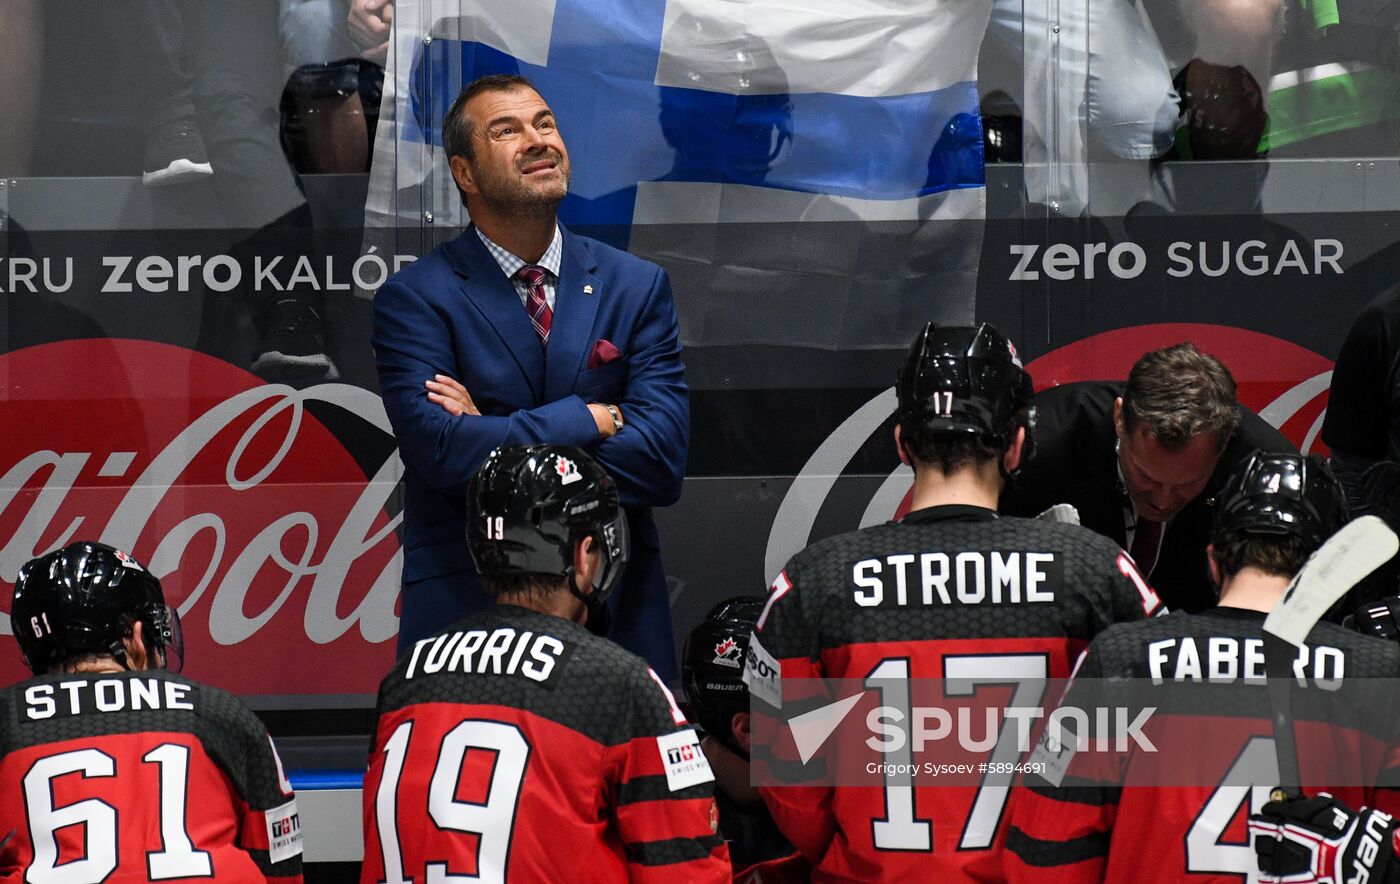 Slovakia Ice Hockey World Championship Canada - Finland